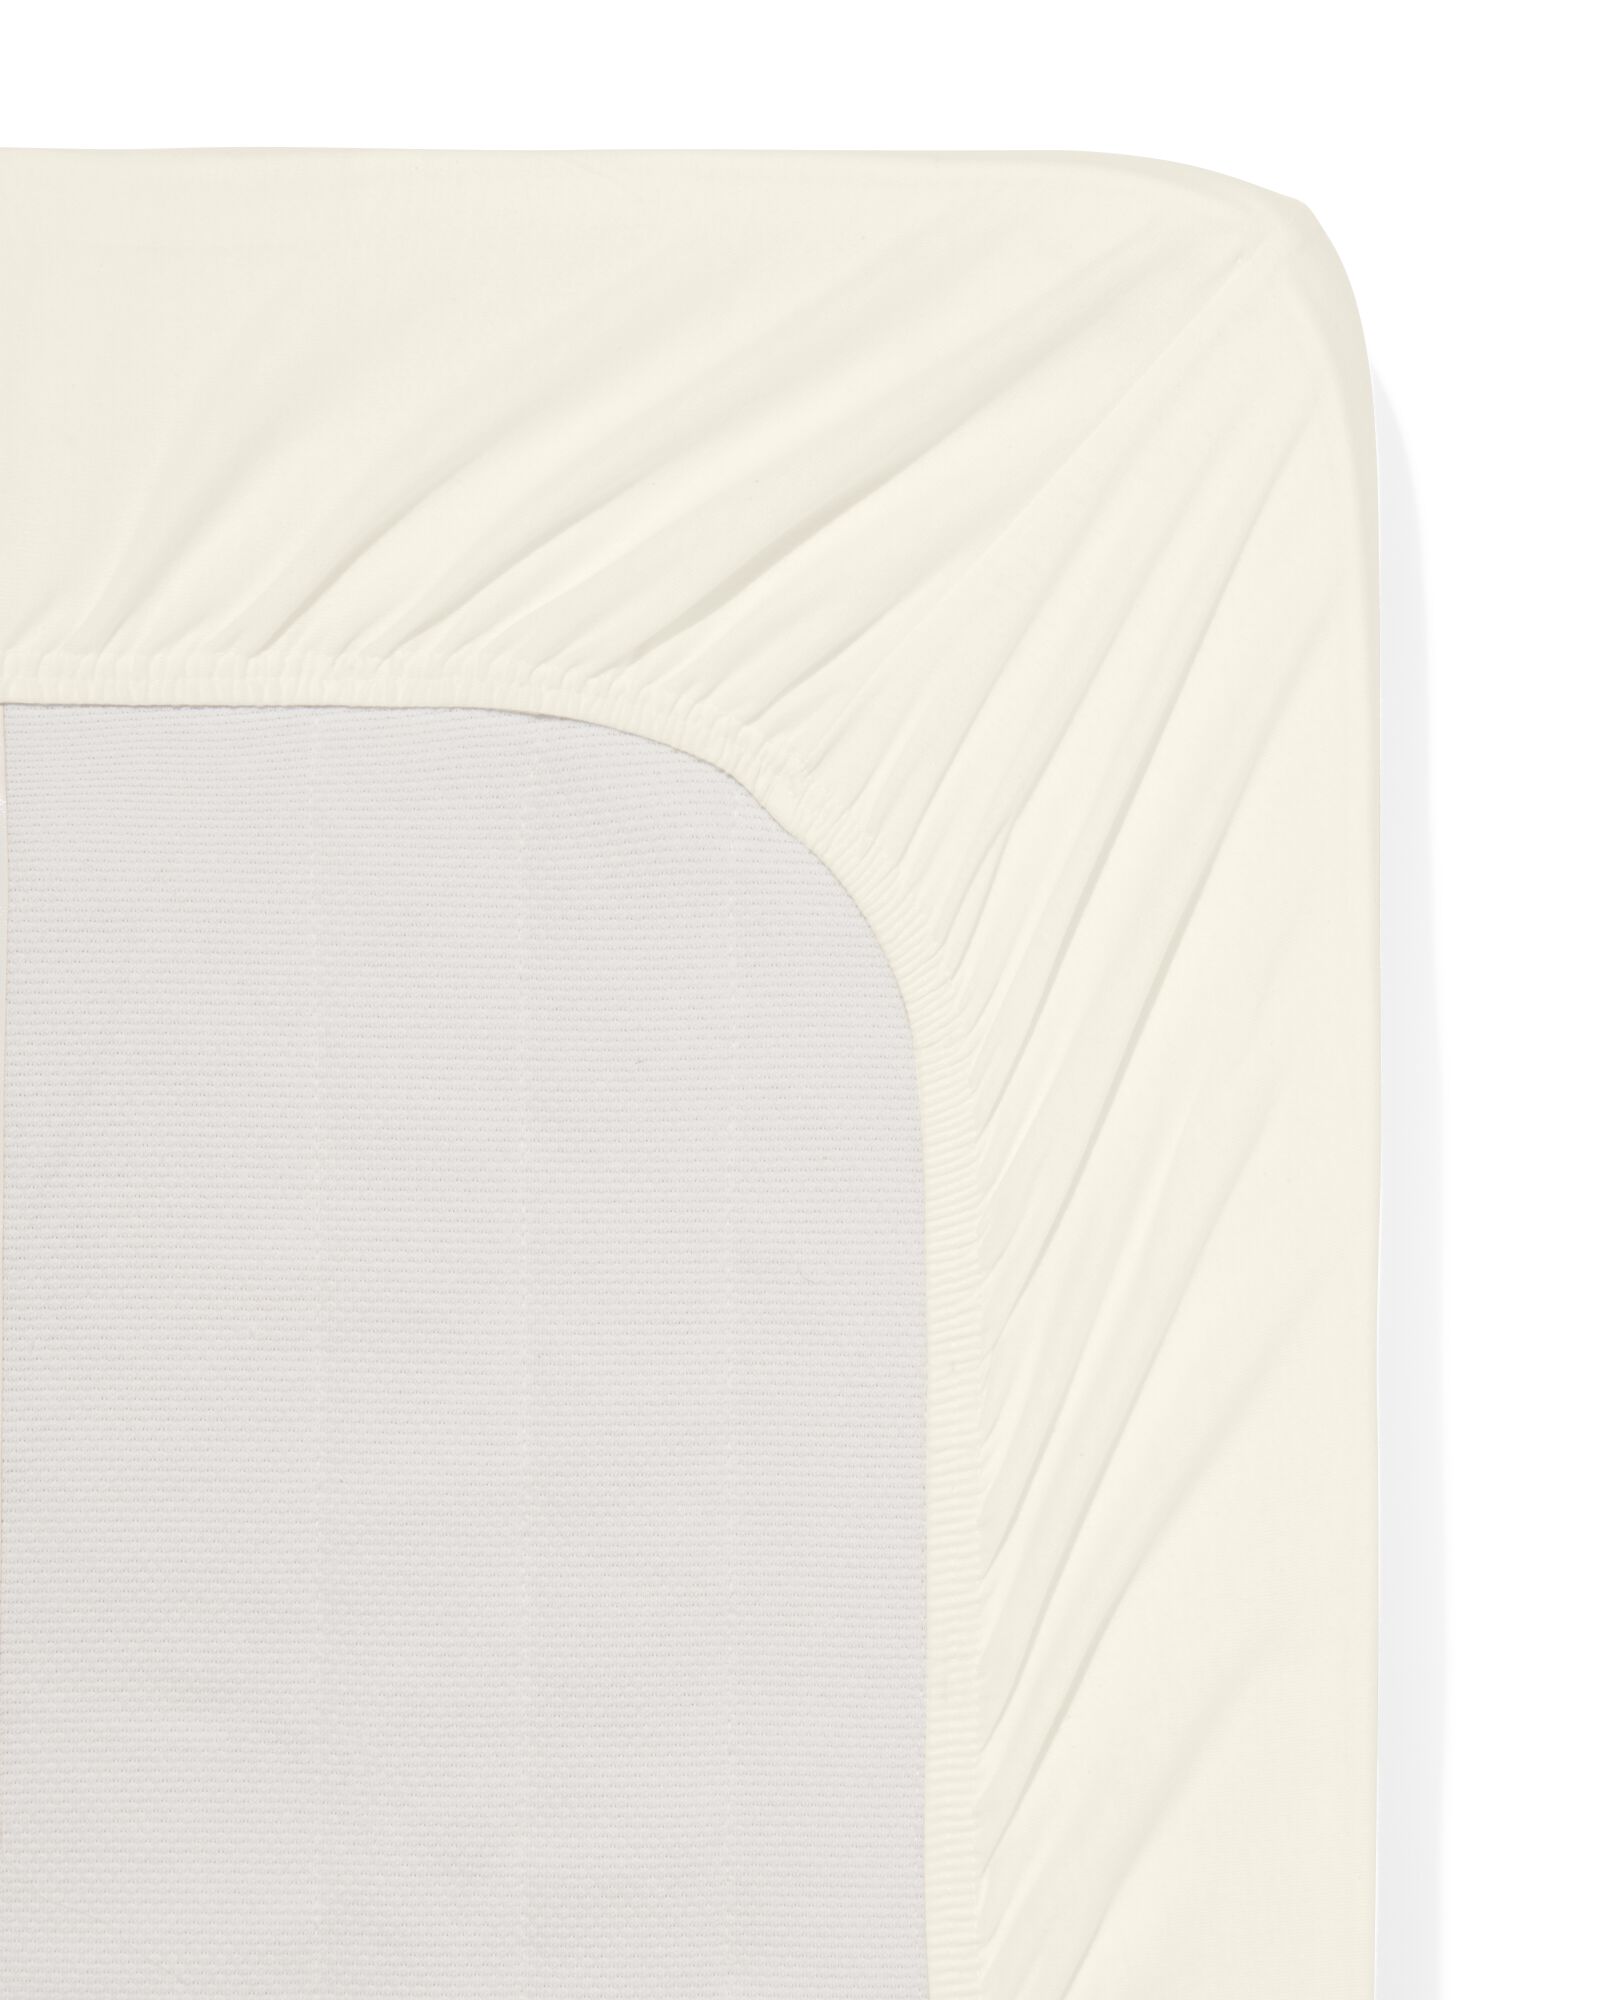 Spannbettlaken, Jersey, 180 x 200 cm, beige - 5190025 - HEMA